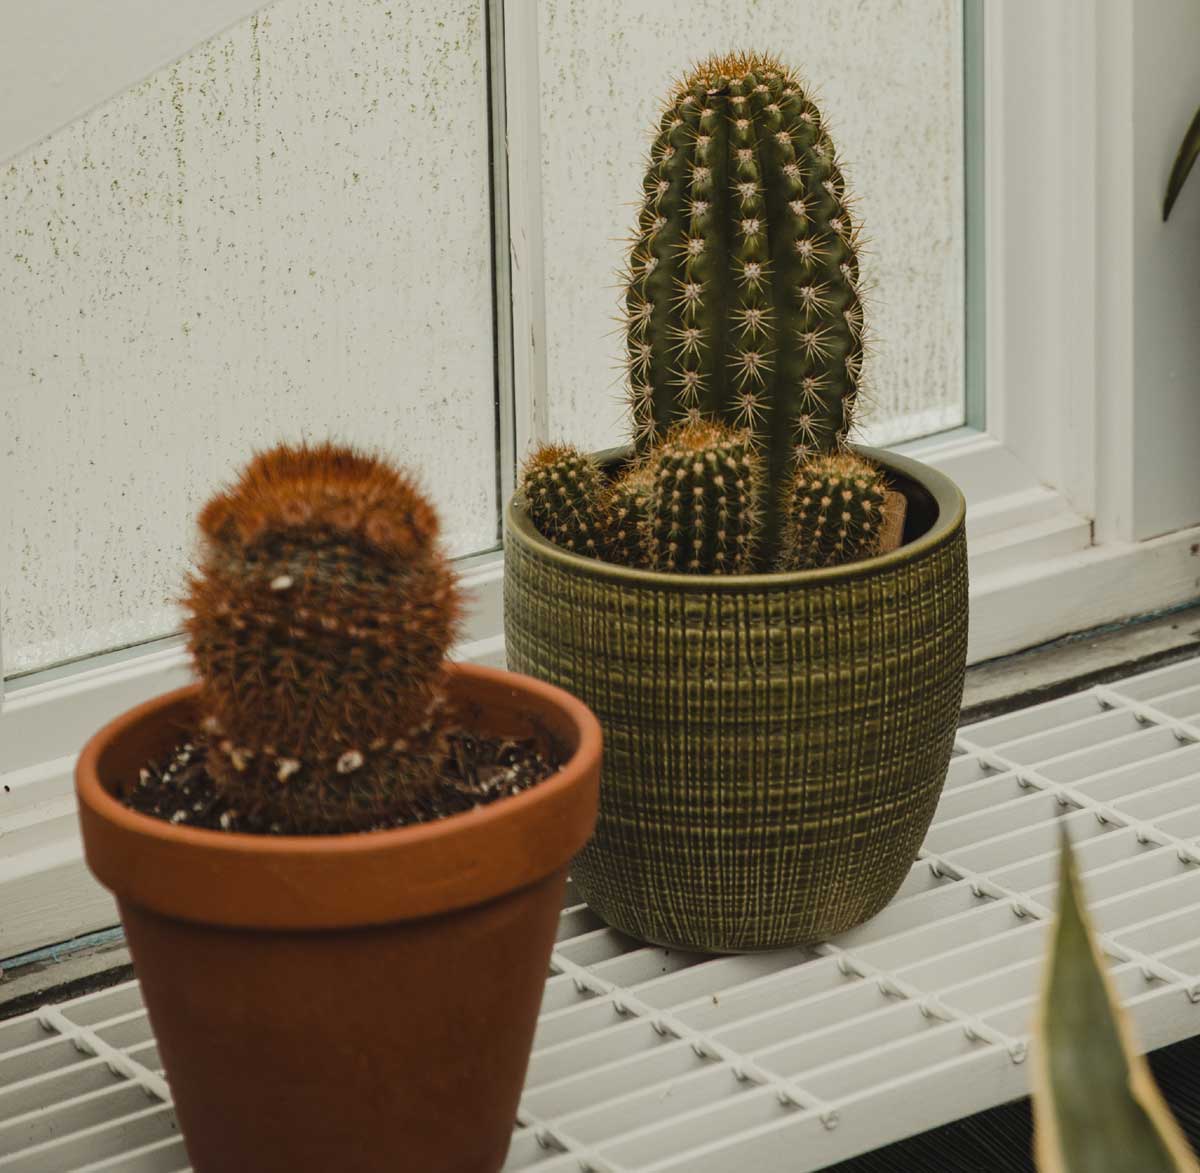 Planta de cactus en una ventana.